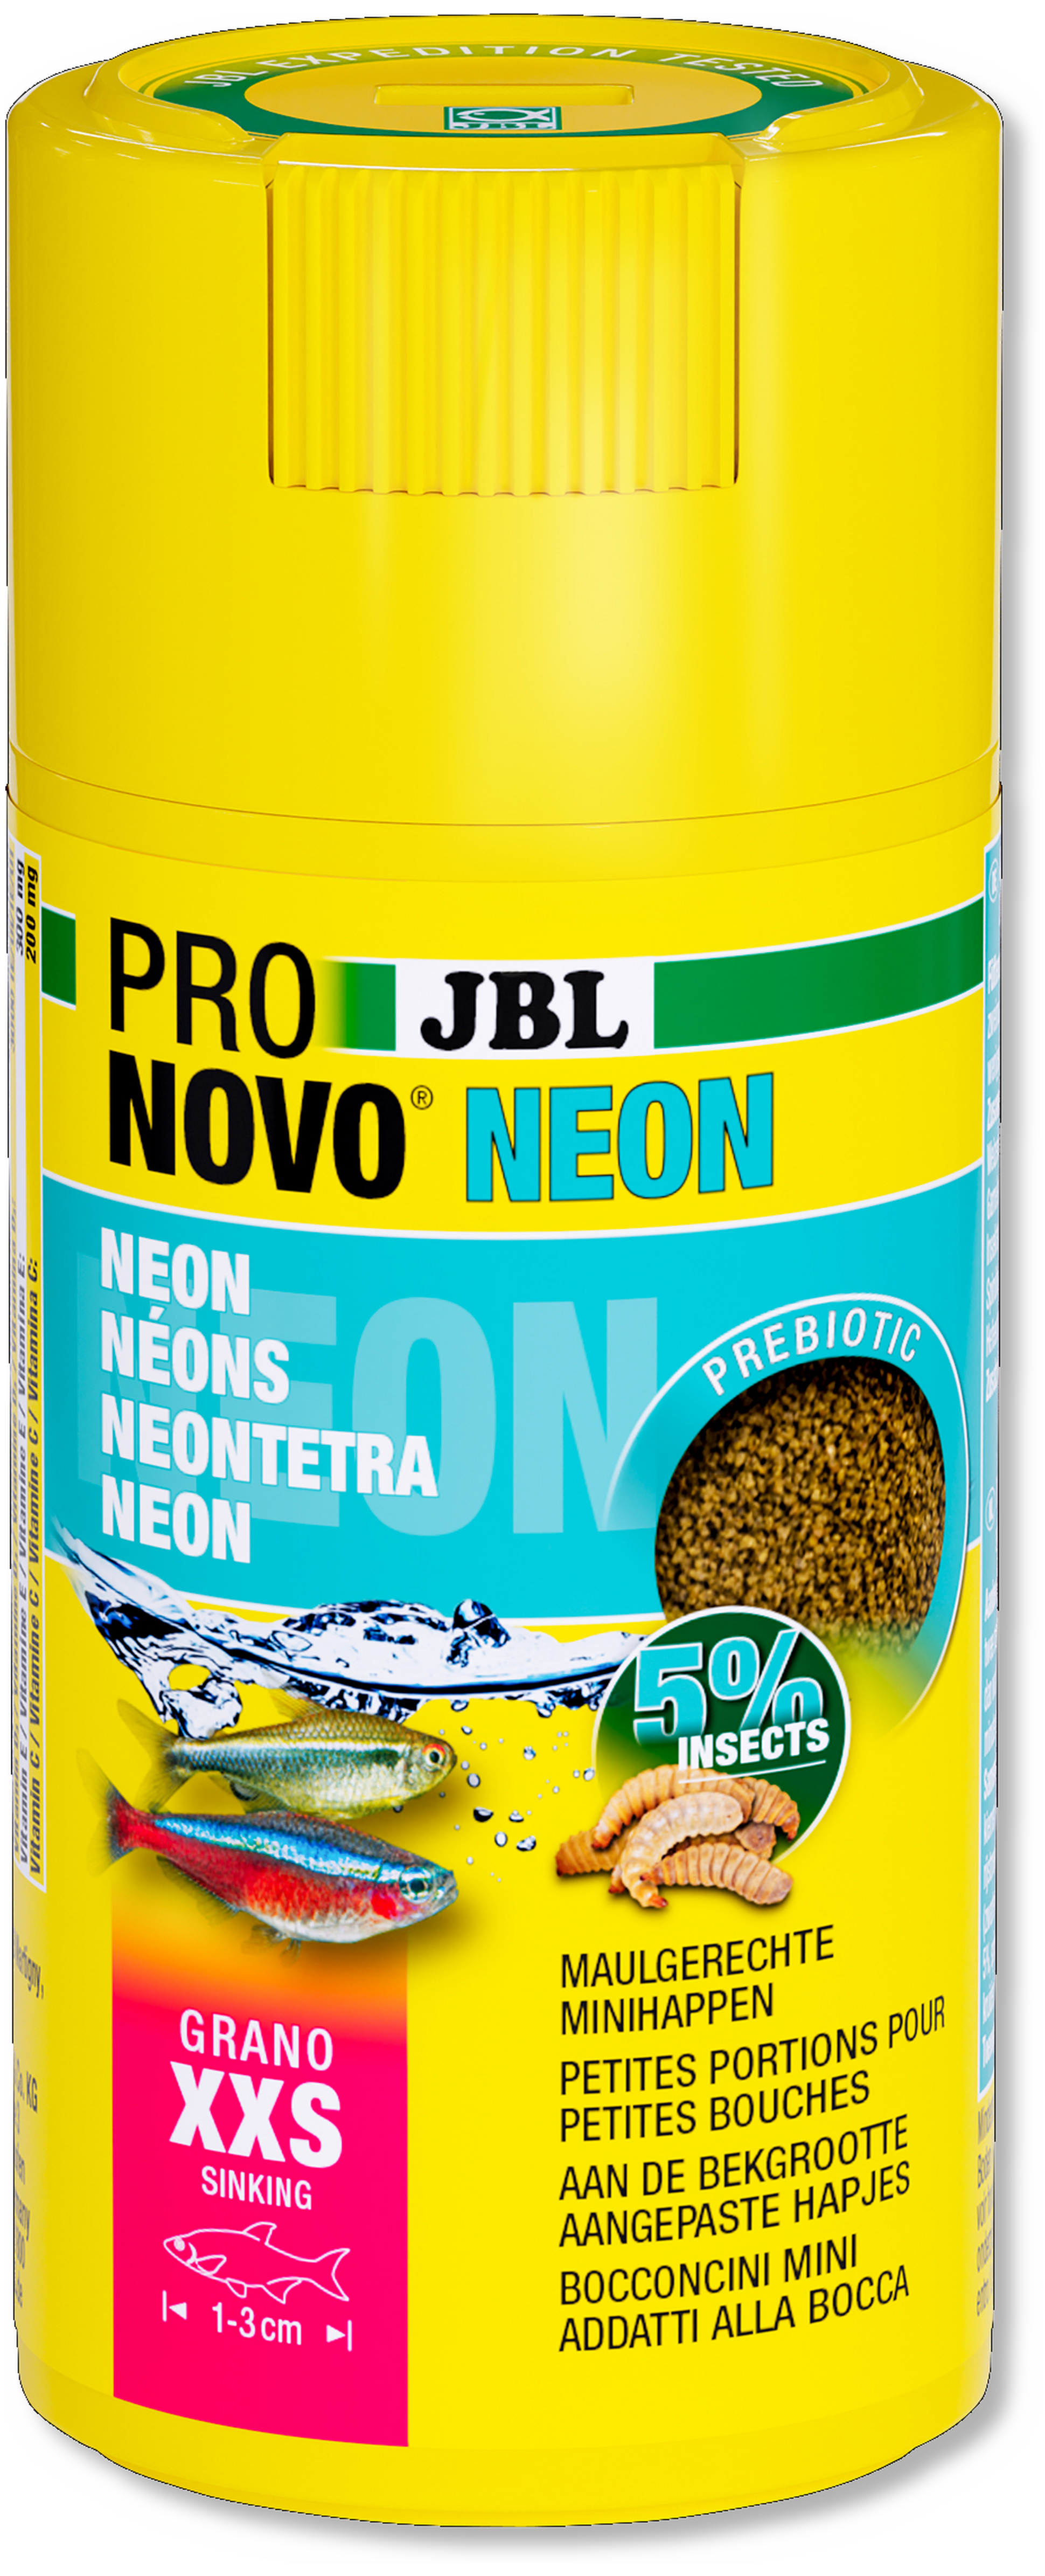 JBL PRONOVO NEON GRANO XXS 100ml